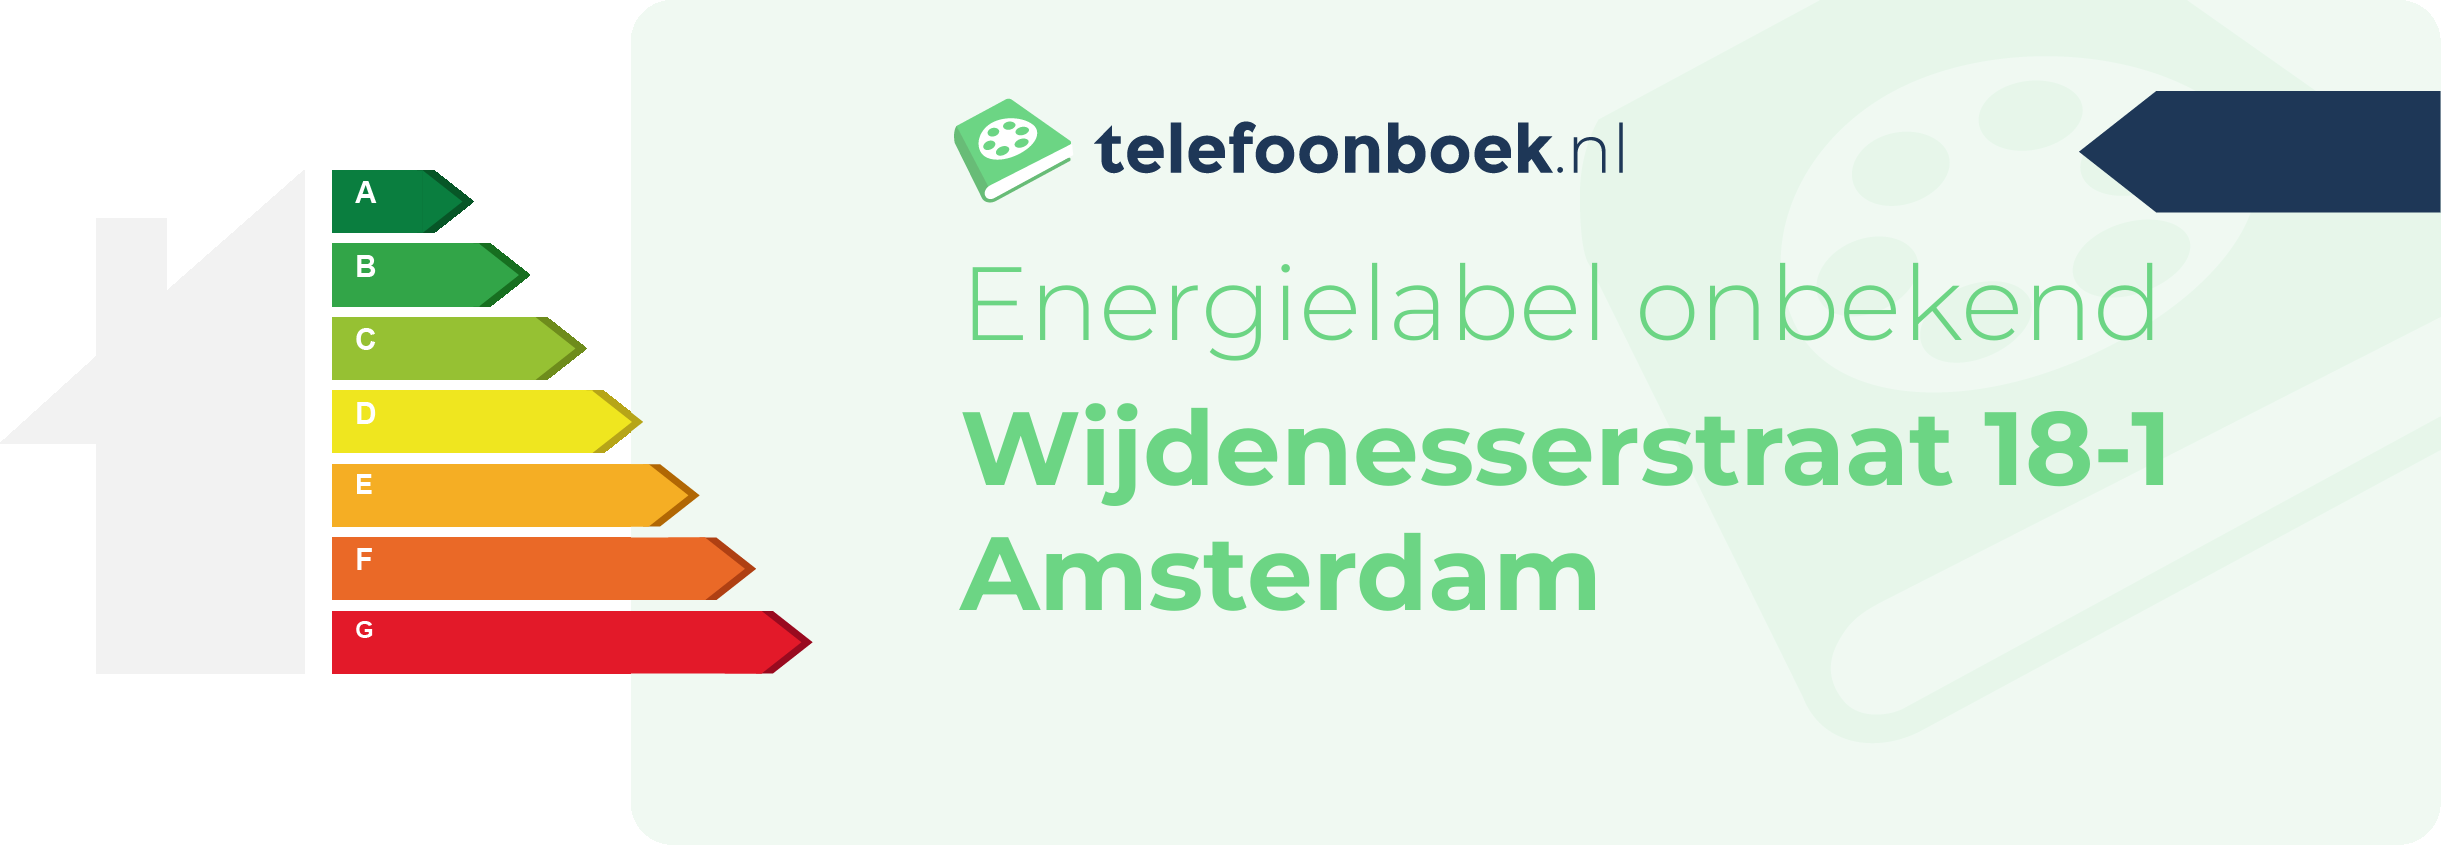 Energielabel Wijdenesserstraat 18-1 Amsterdam